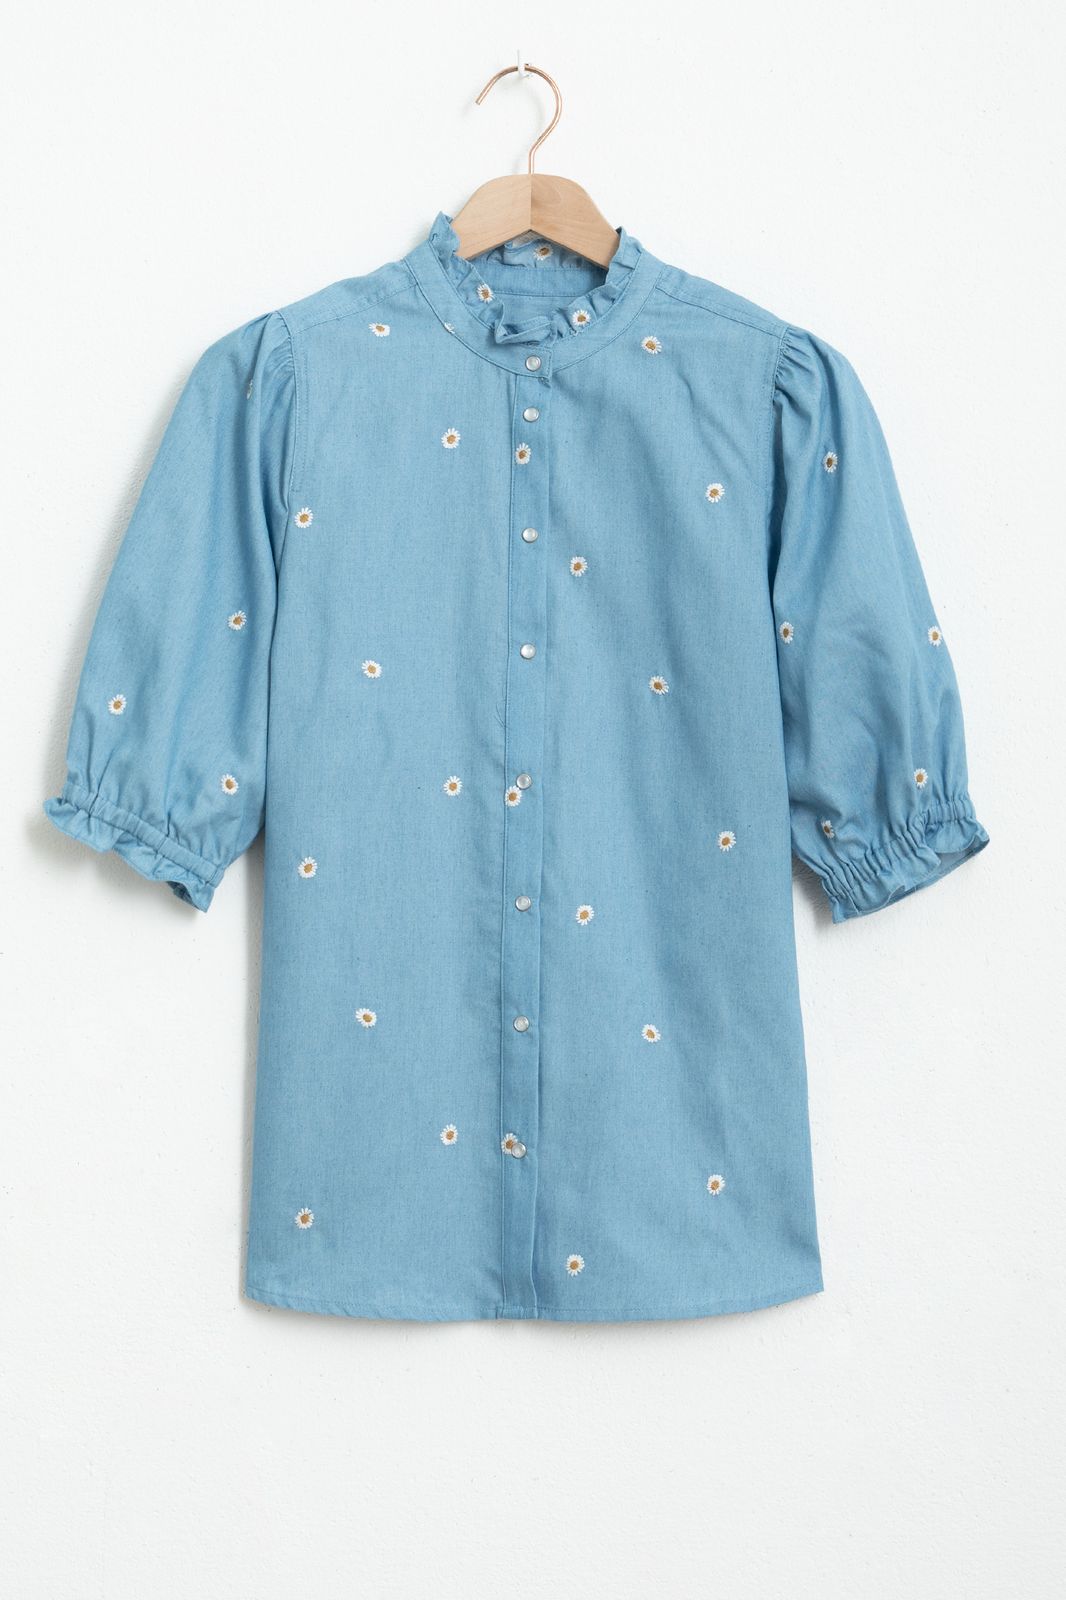 Bluse mit Gänseblümchen-Stickerei - blau